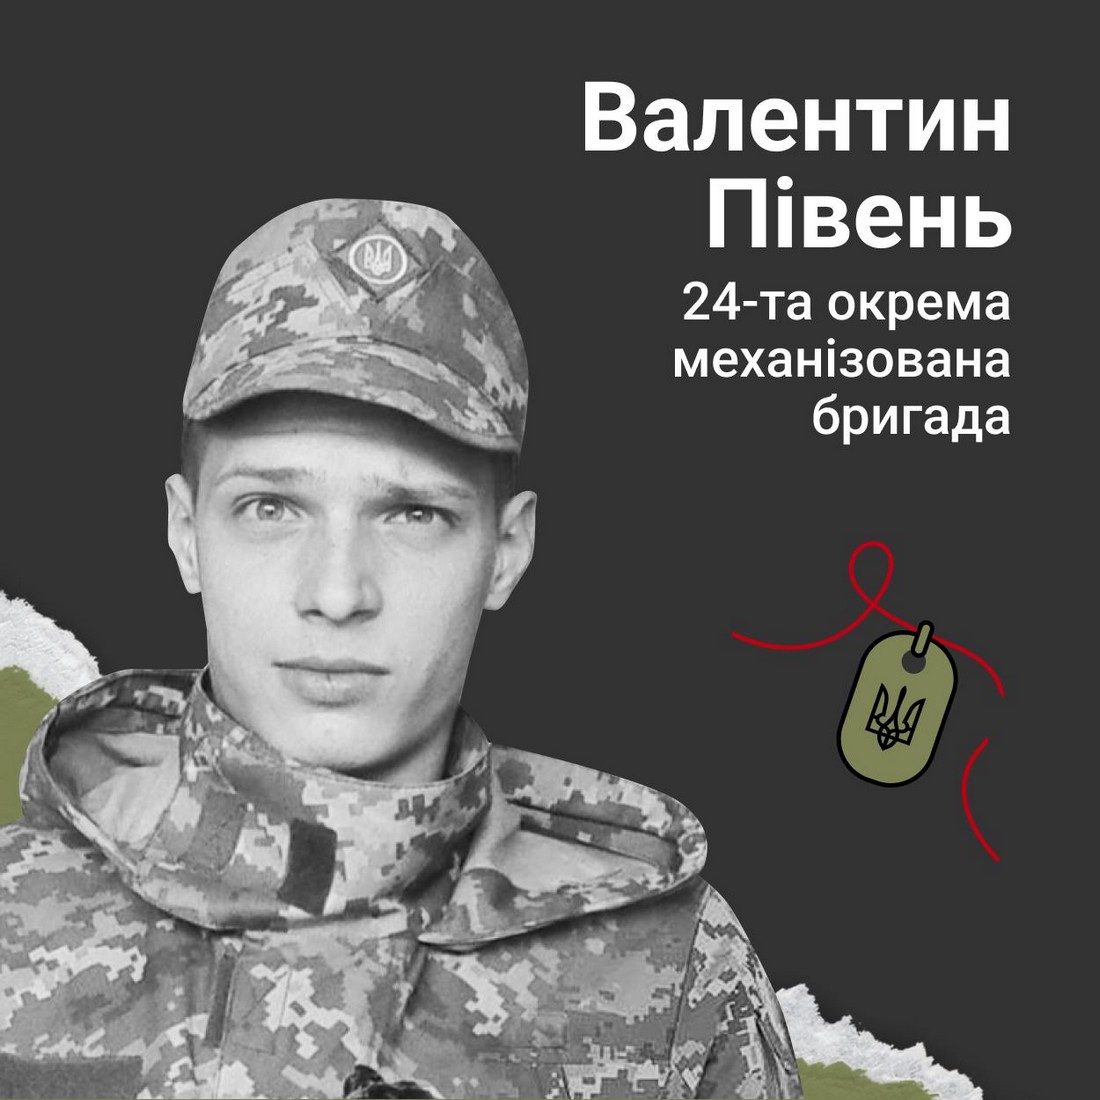 Меморіал: вбиті росією. Захисник Валентин Півень, 28 років, Луганщина, квітень